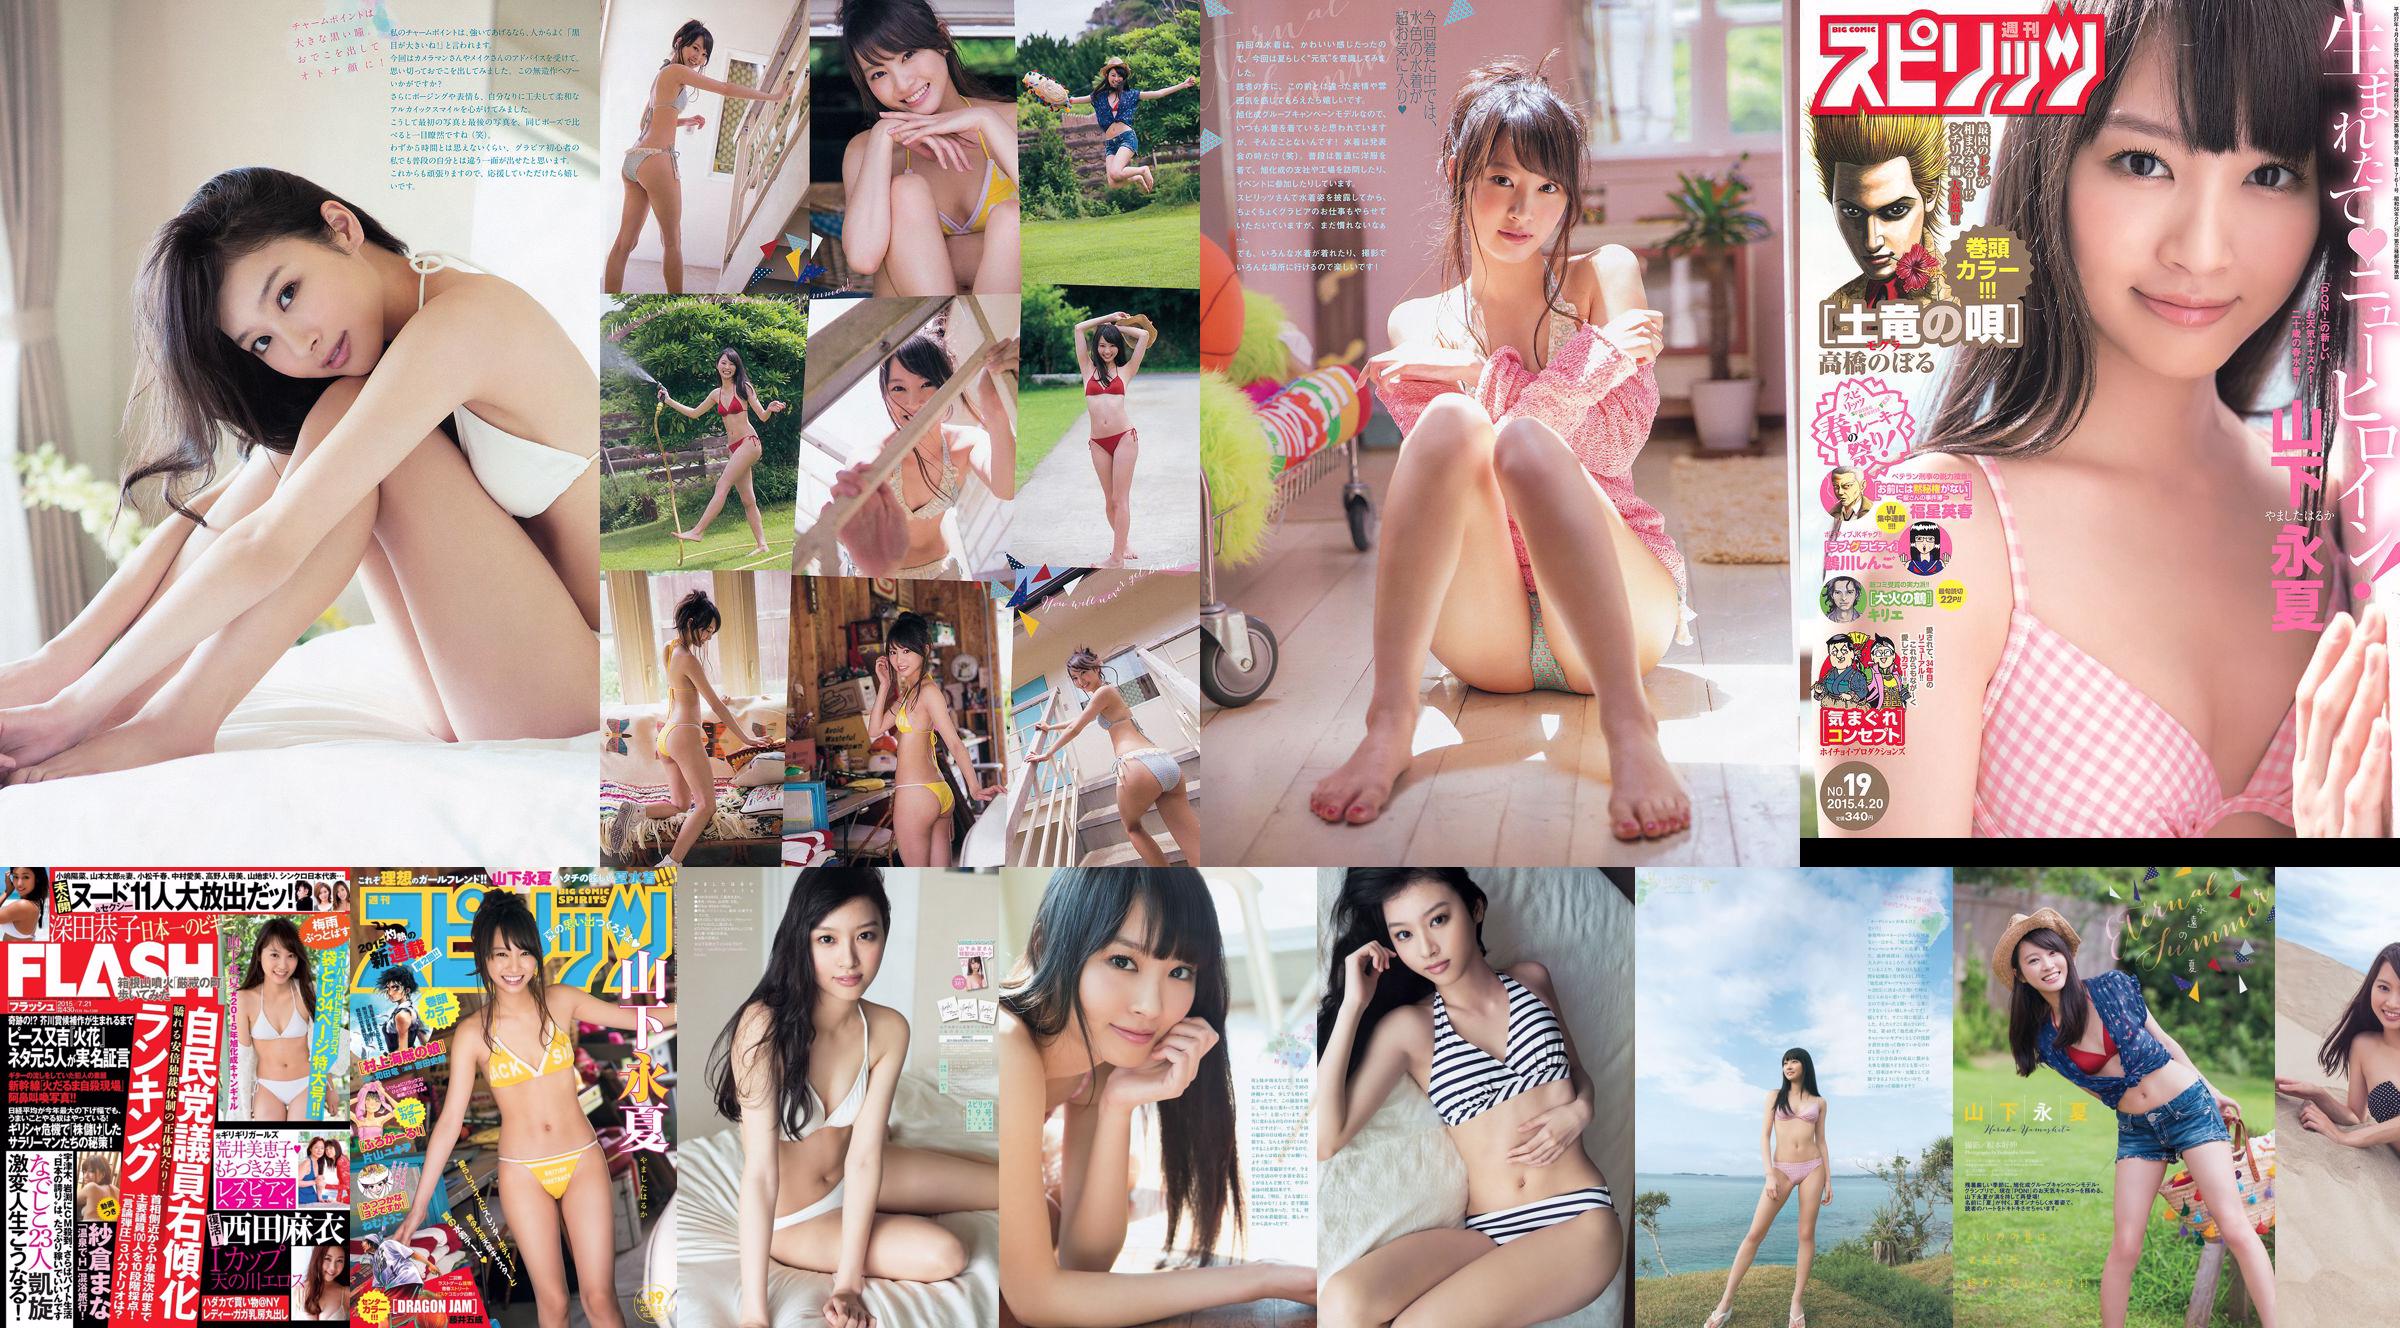 [Wöchentliche große Comic-Spirituosen] Yamashita Yongxia 2015 Nr. 19 Fotomagazin No.8b214b Seite 1